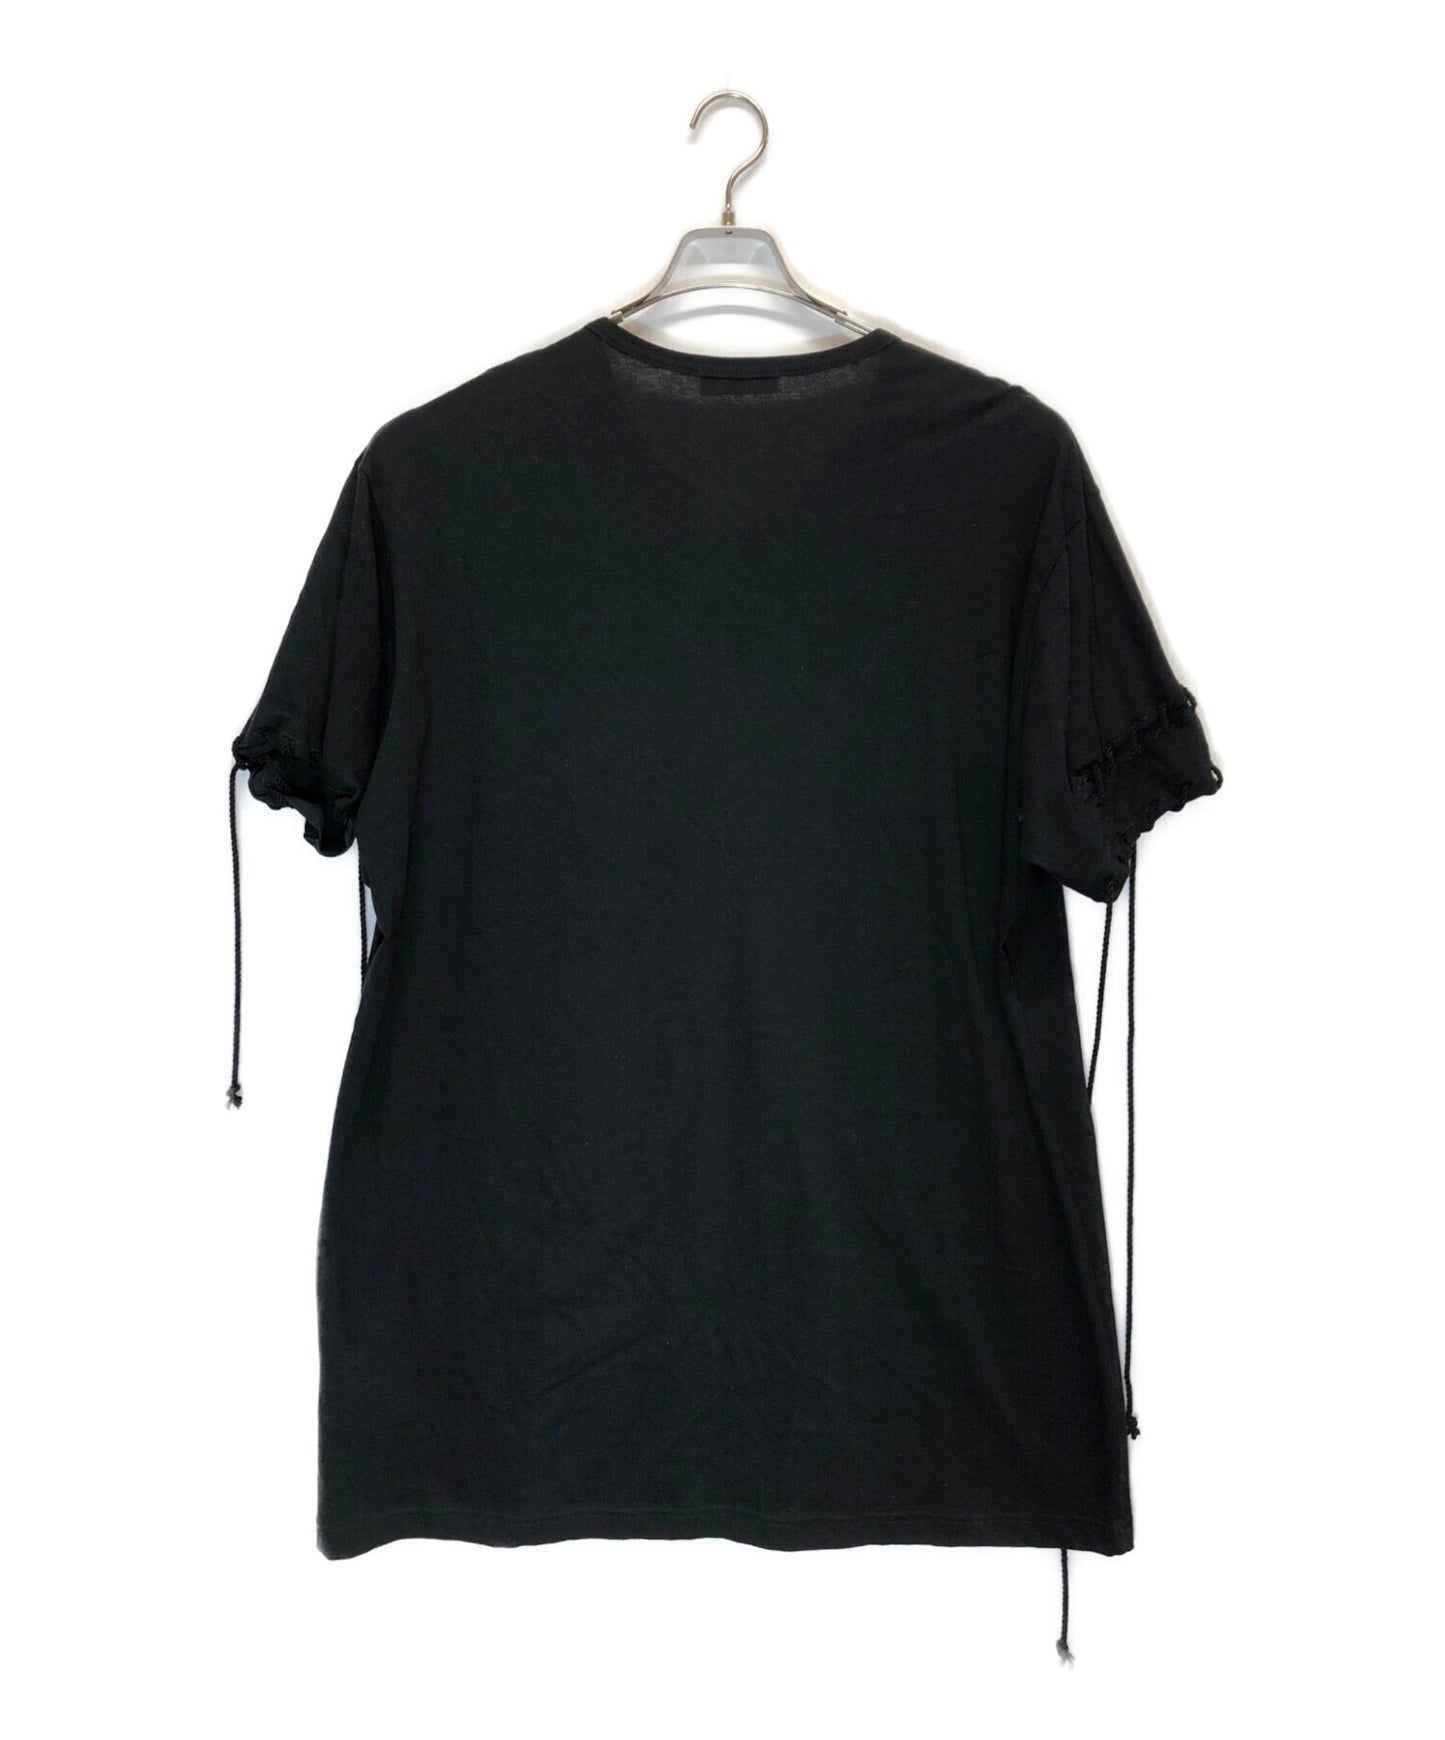 Yohji Yamamoto 레이스 업 둥근 목 짧은 슬리브 티셔츠 HH-T29-083